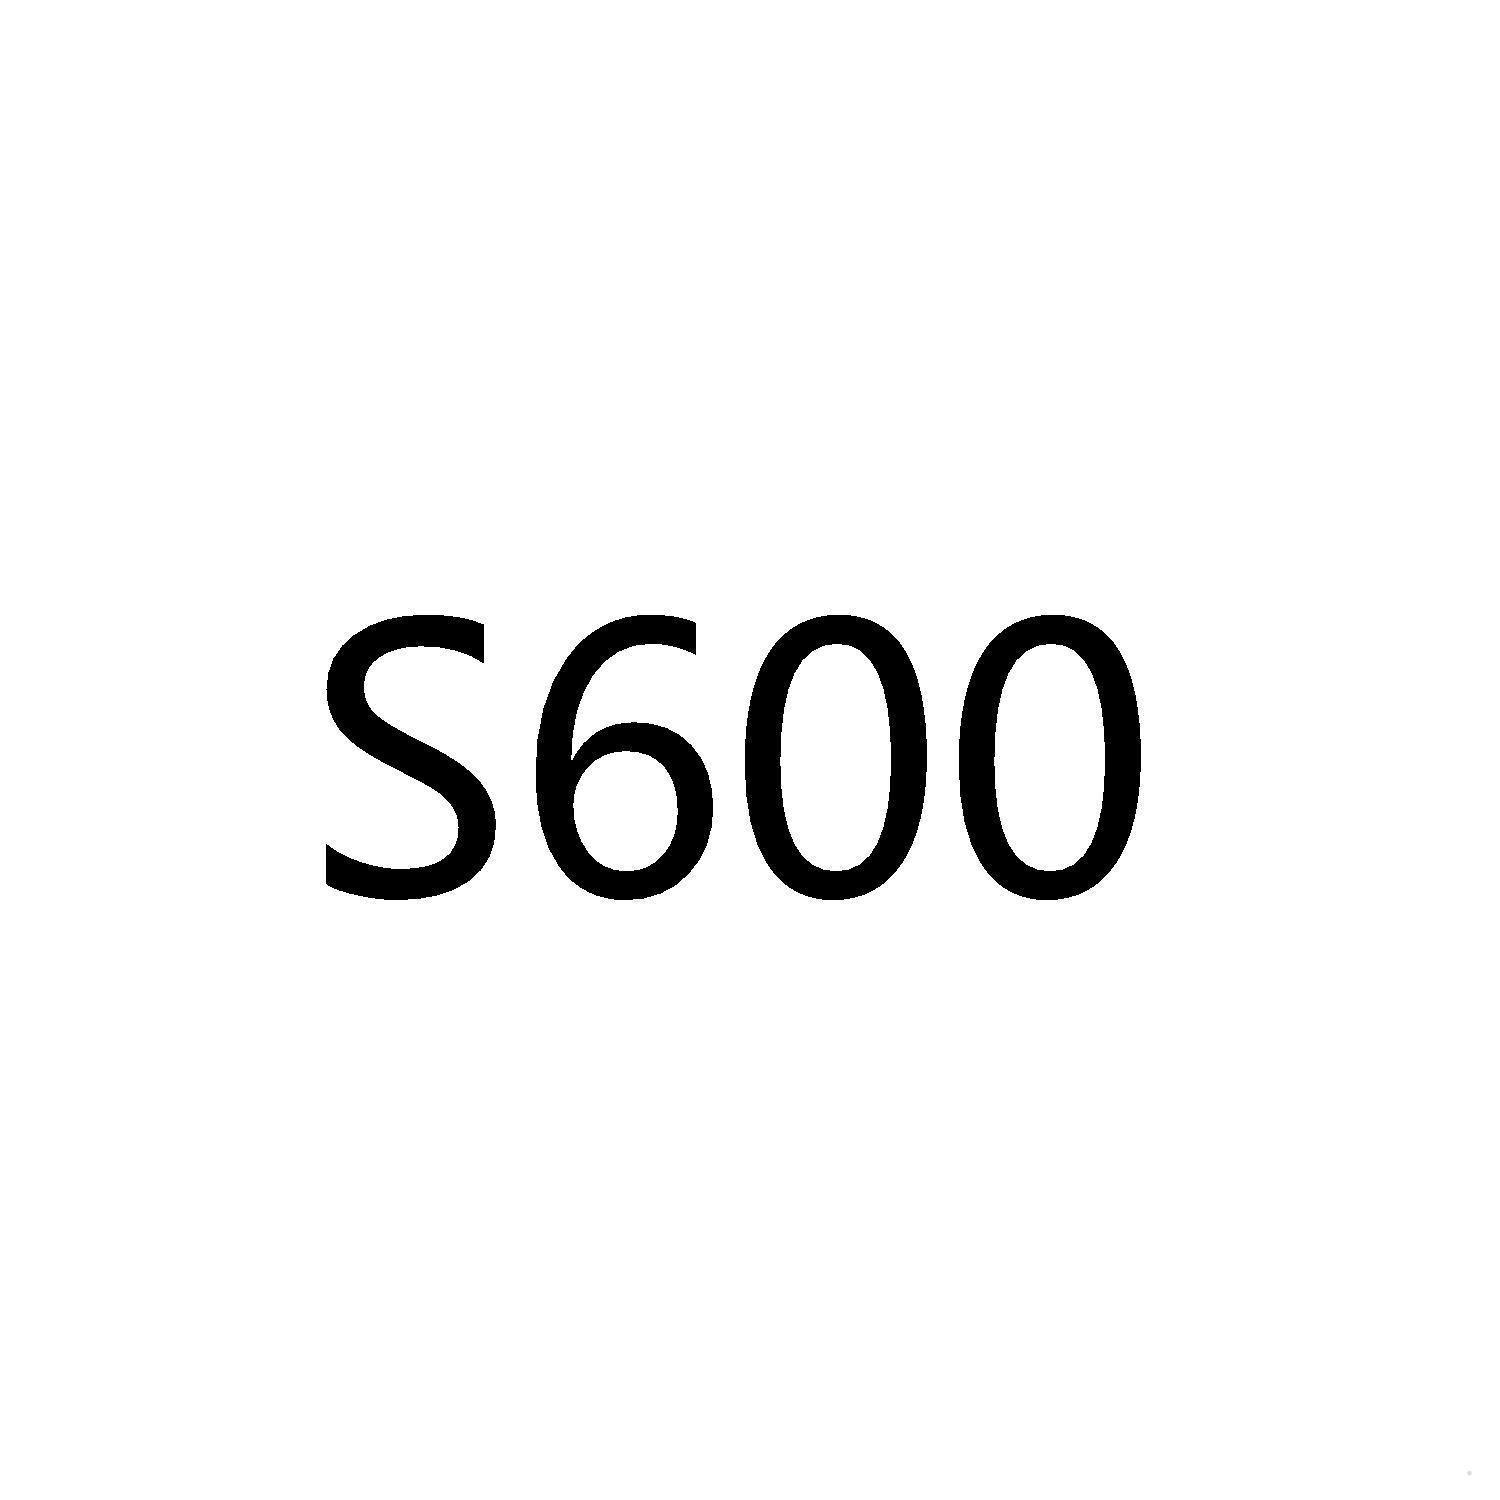 S 600logo